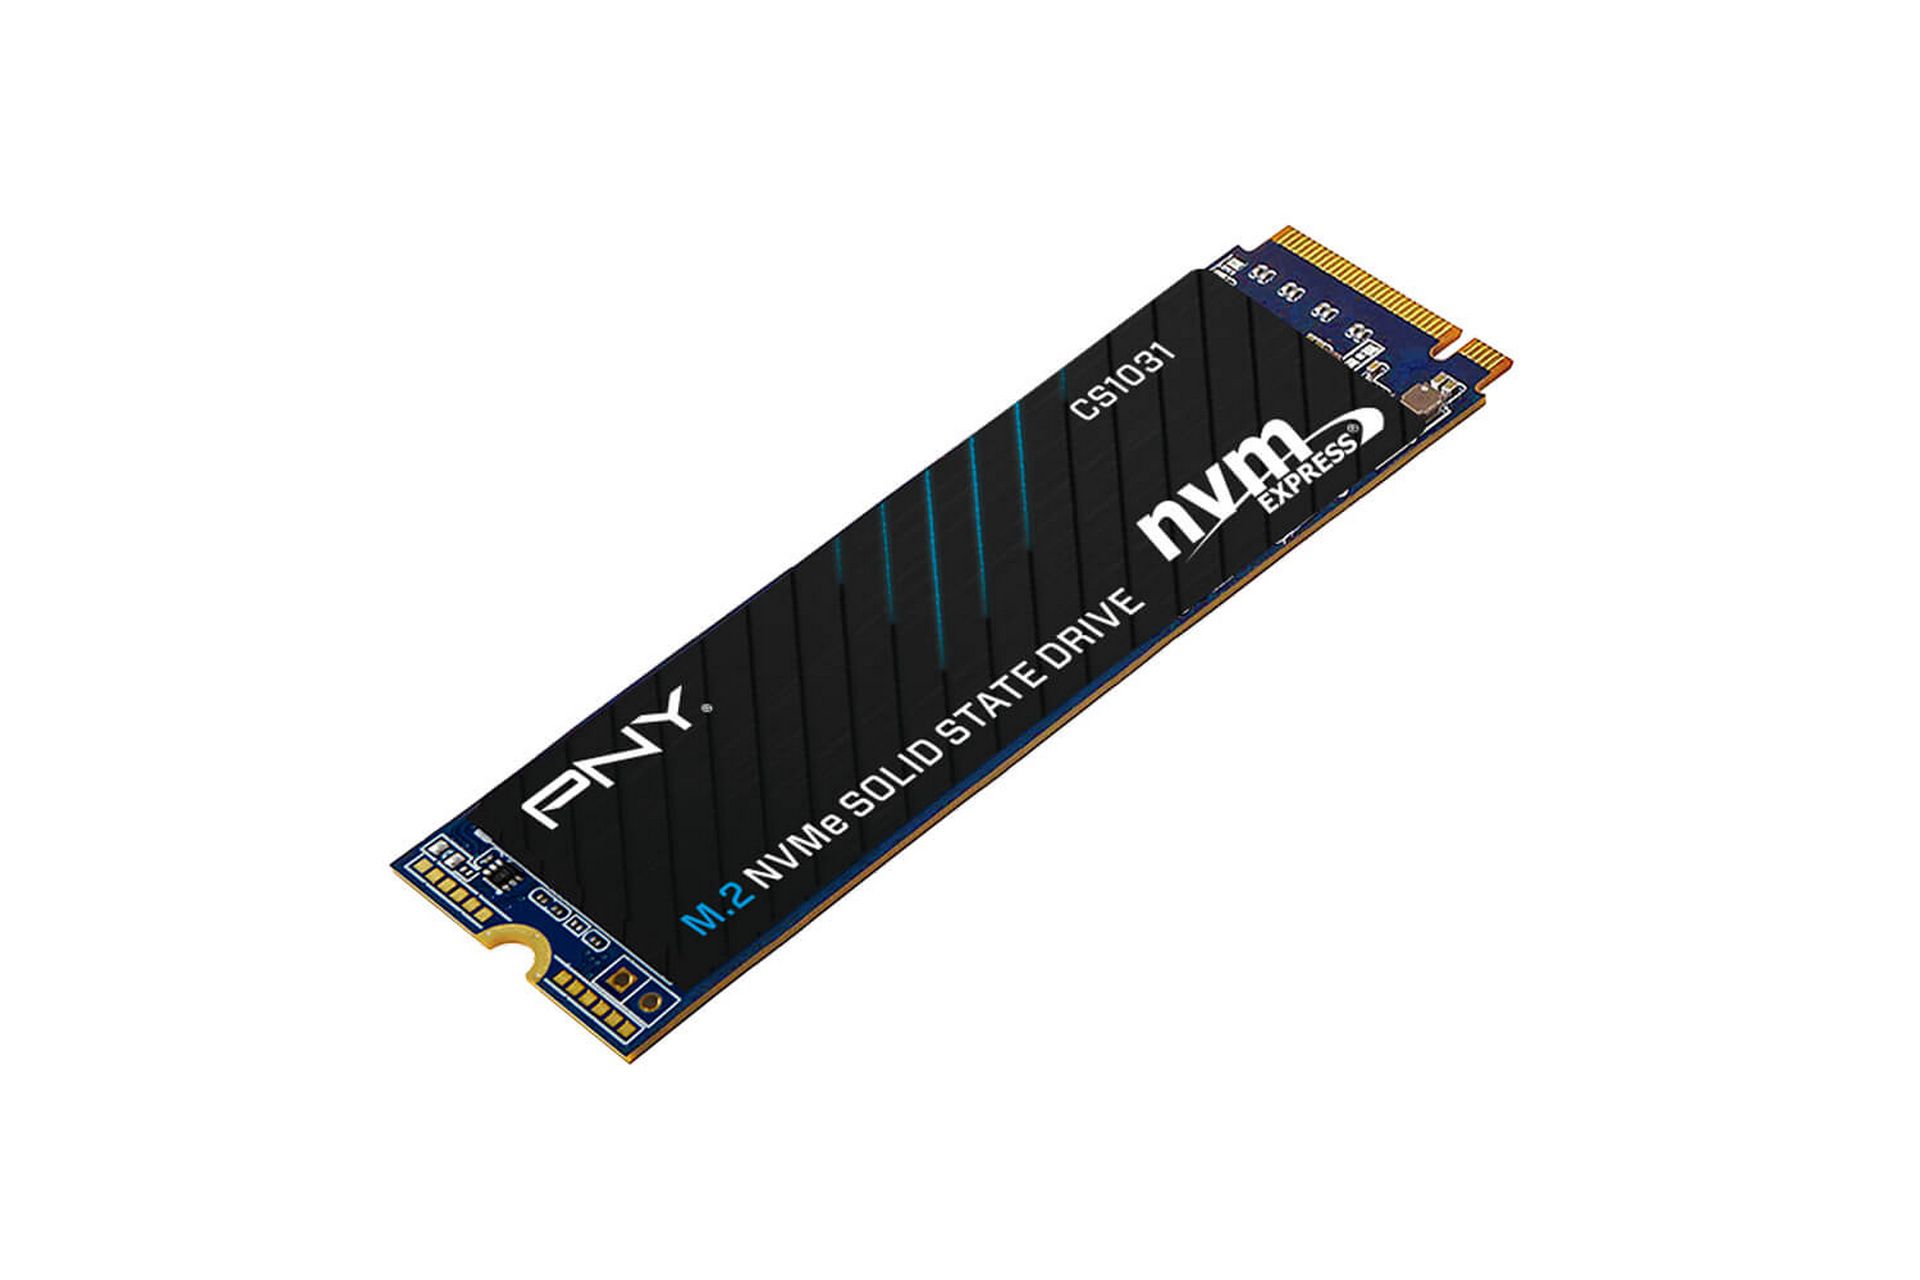 Ổ cứng SSD PNY CS1031 256GB (M.2 2280 | PCIe Gen 3x4 NVMe 1.3 | 1700MB/s | 1100MB/s)